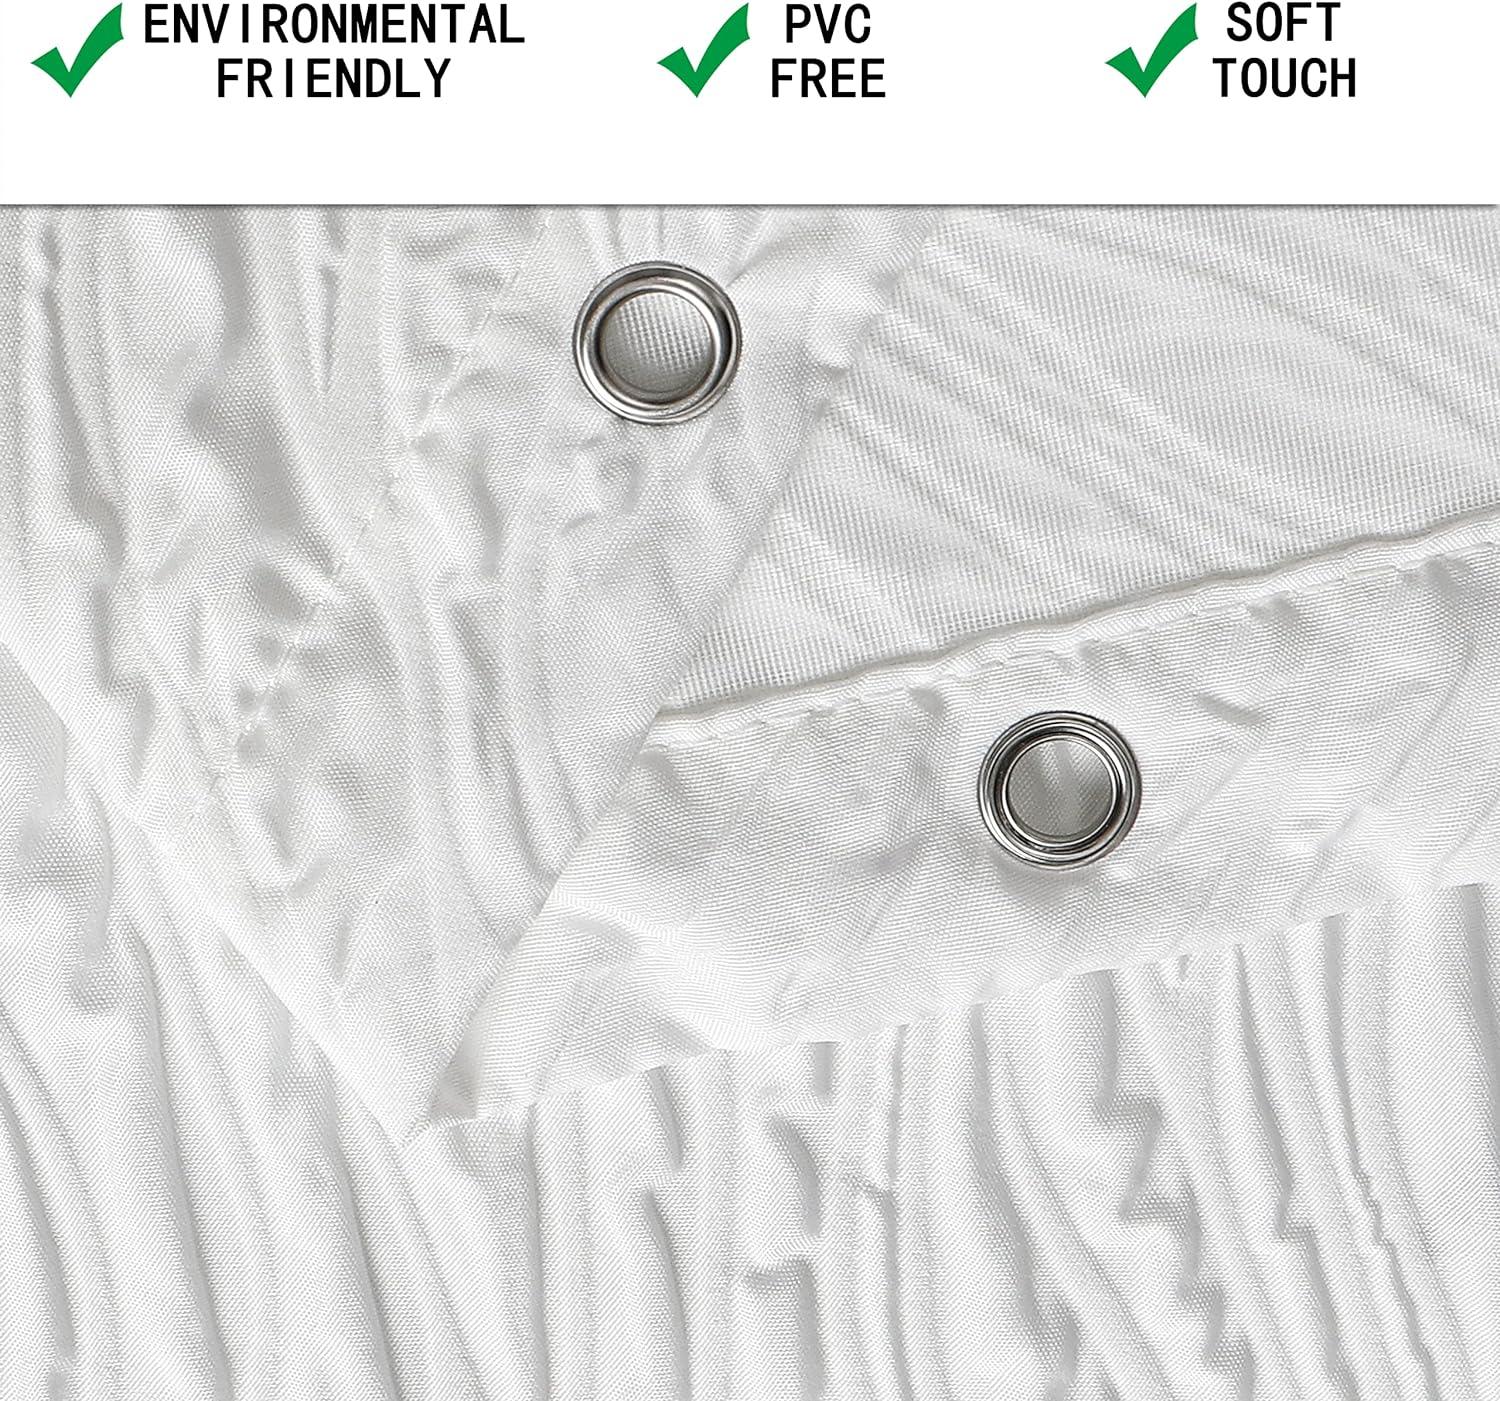 OWENIE Cortina de ducha blanca para baño, cortina de ducha de tela  impermeable geométrica en relieve 3D, diseño moderno, elegante, innovador,  estilo